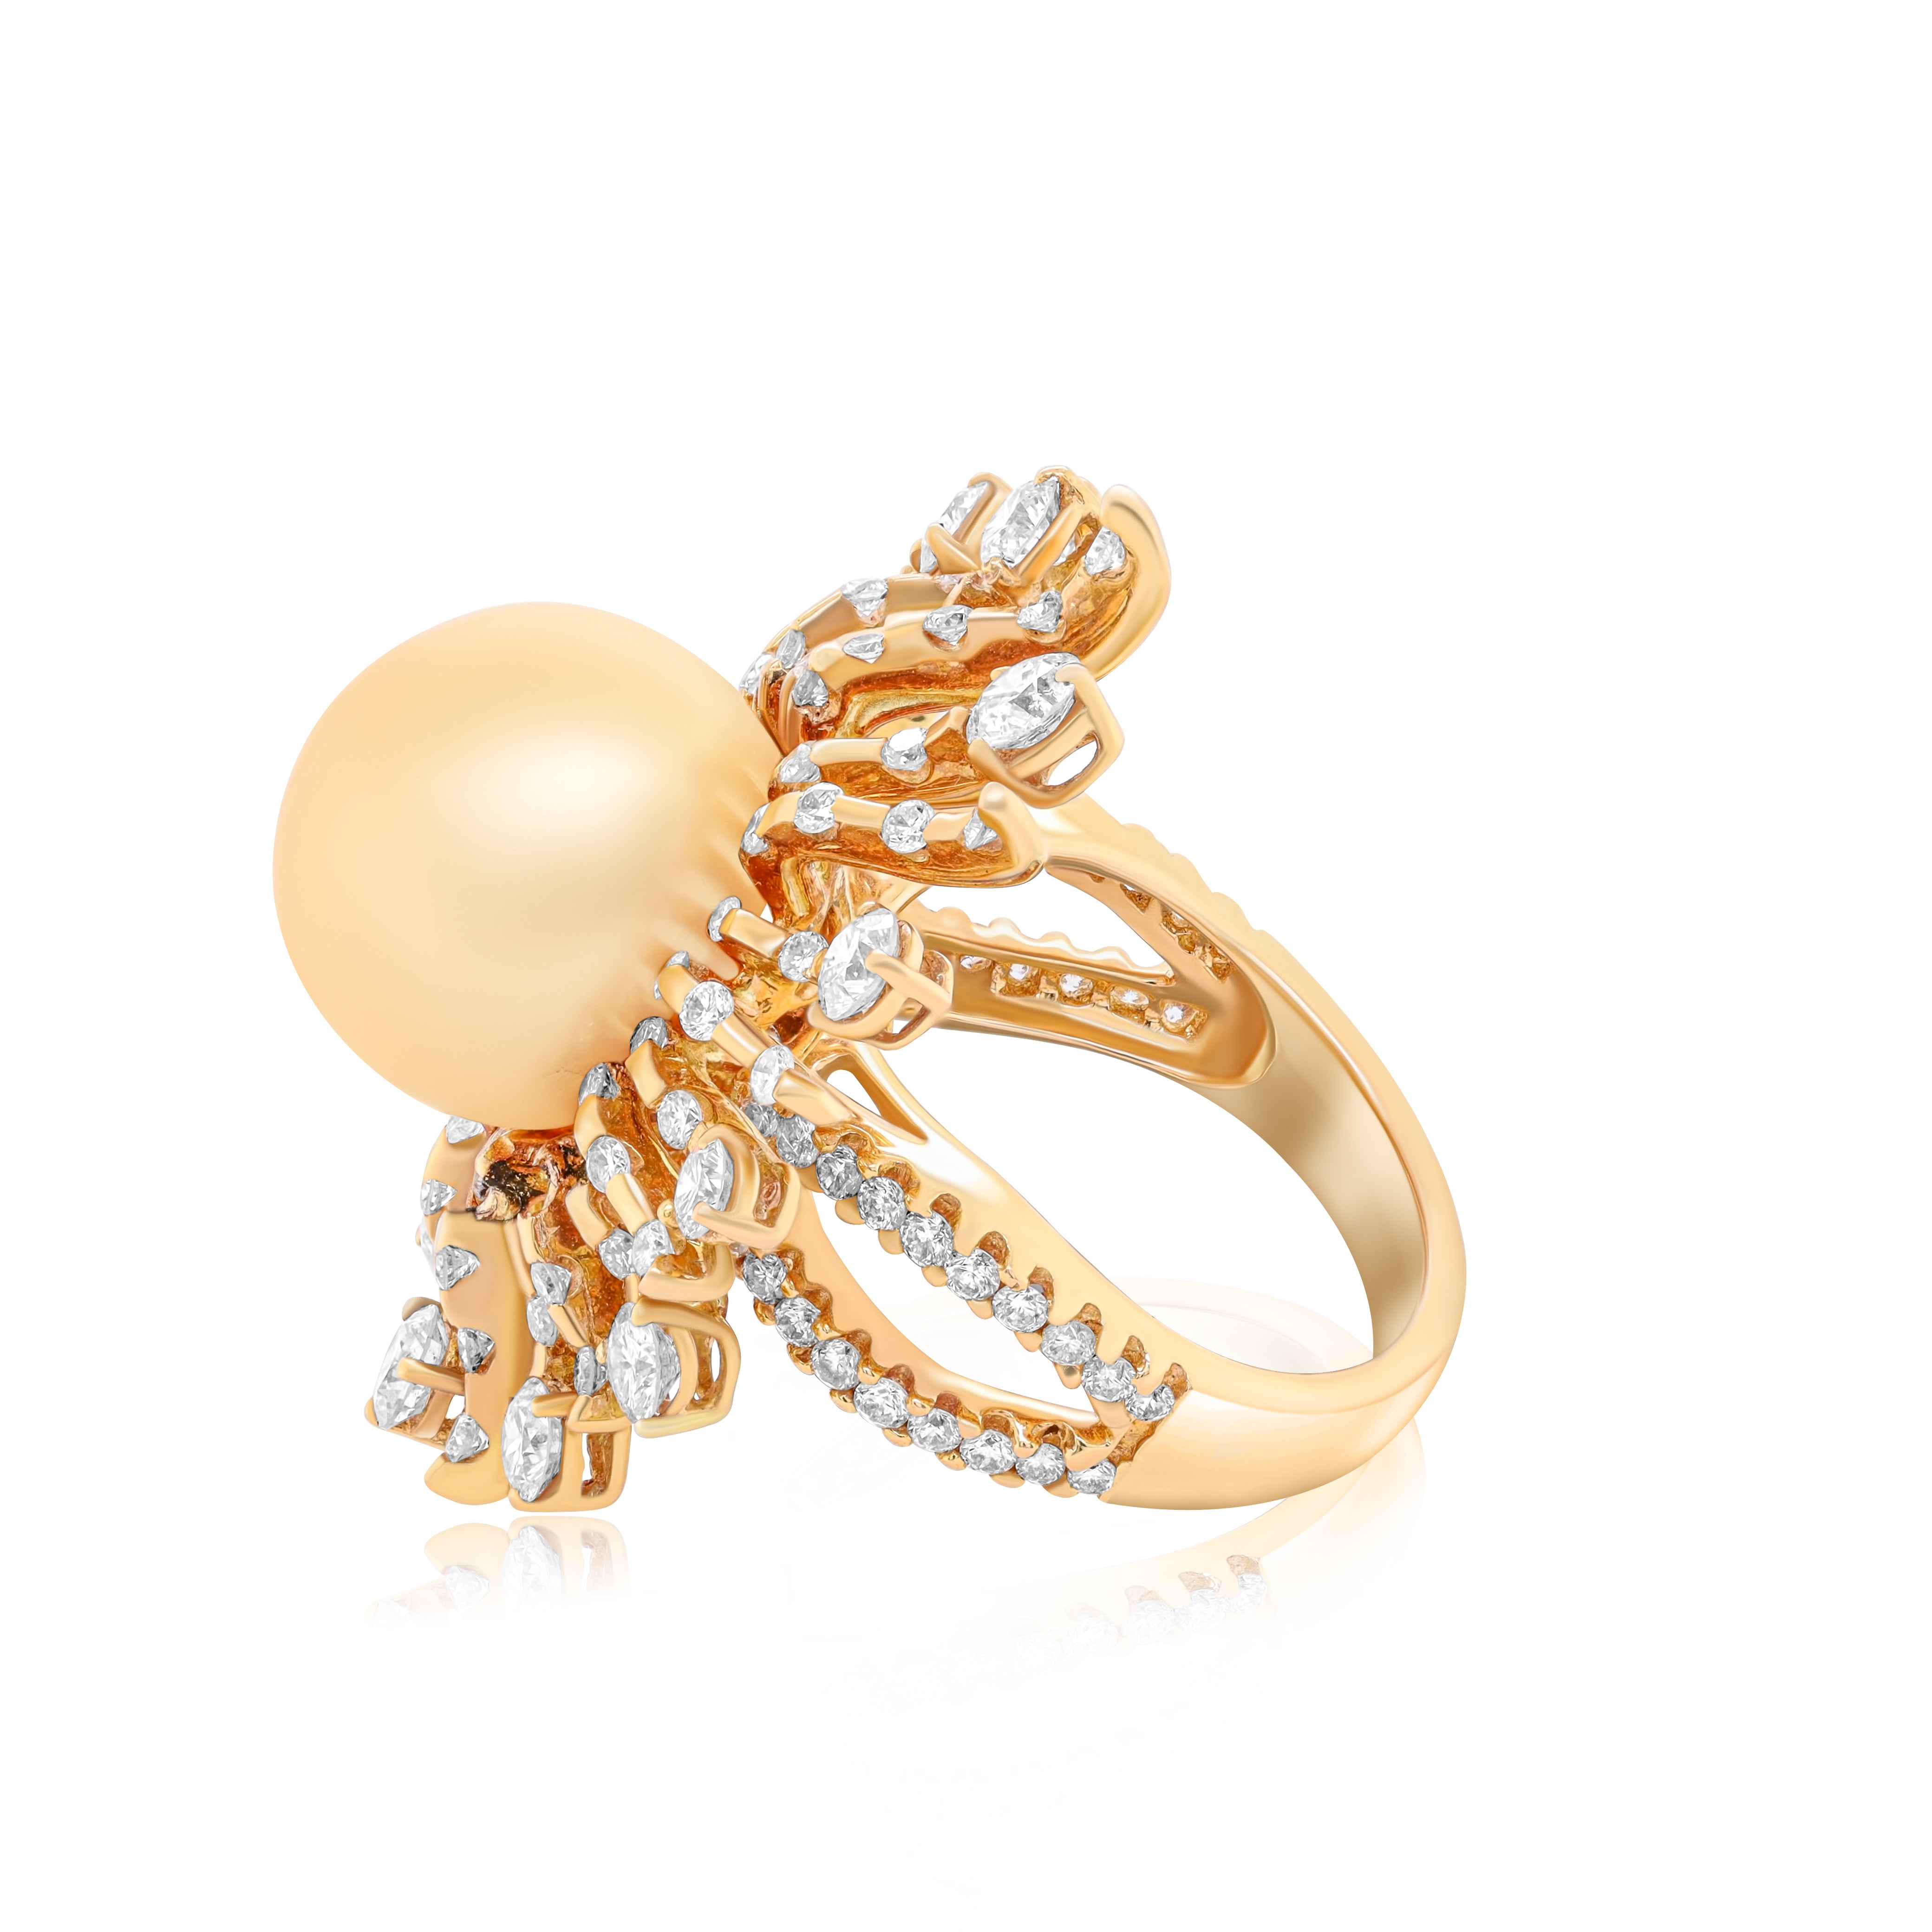 Sun Diamond and Pearl Ring